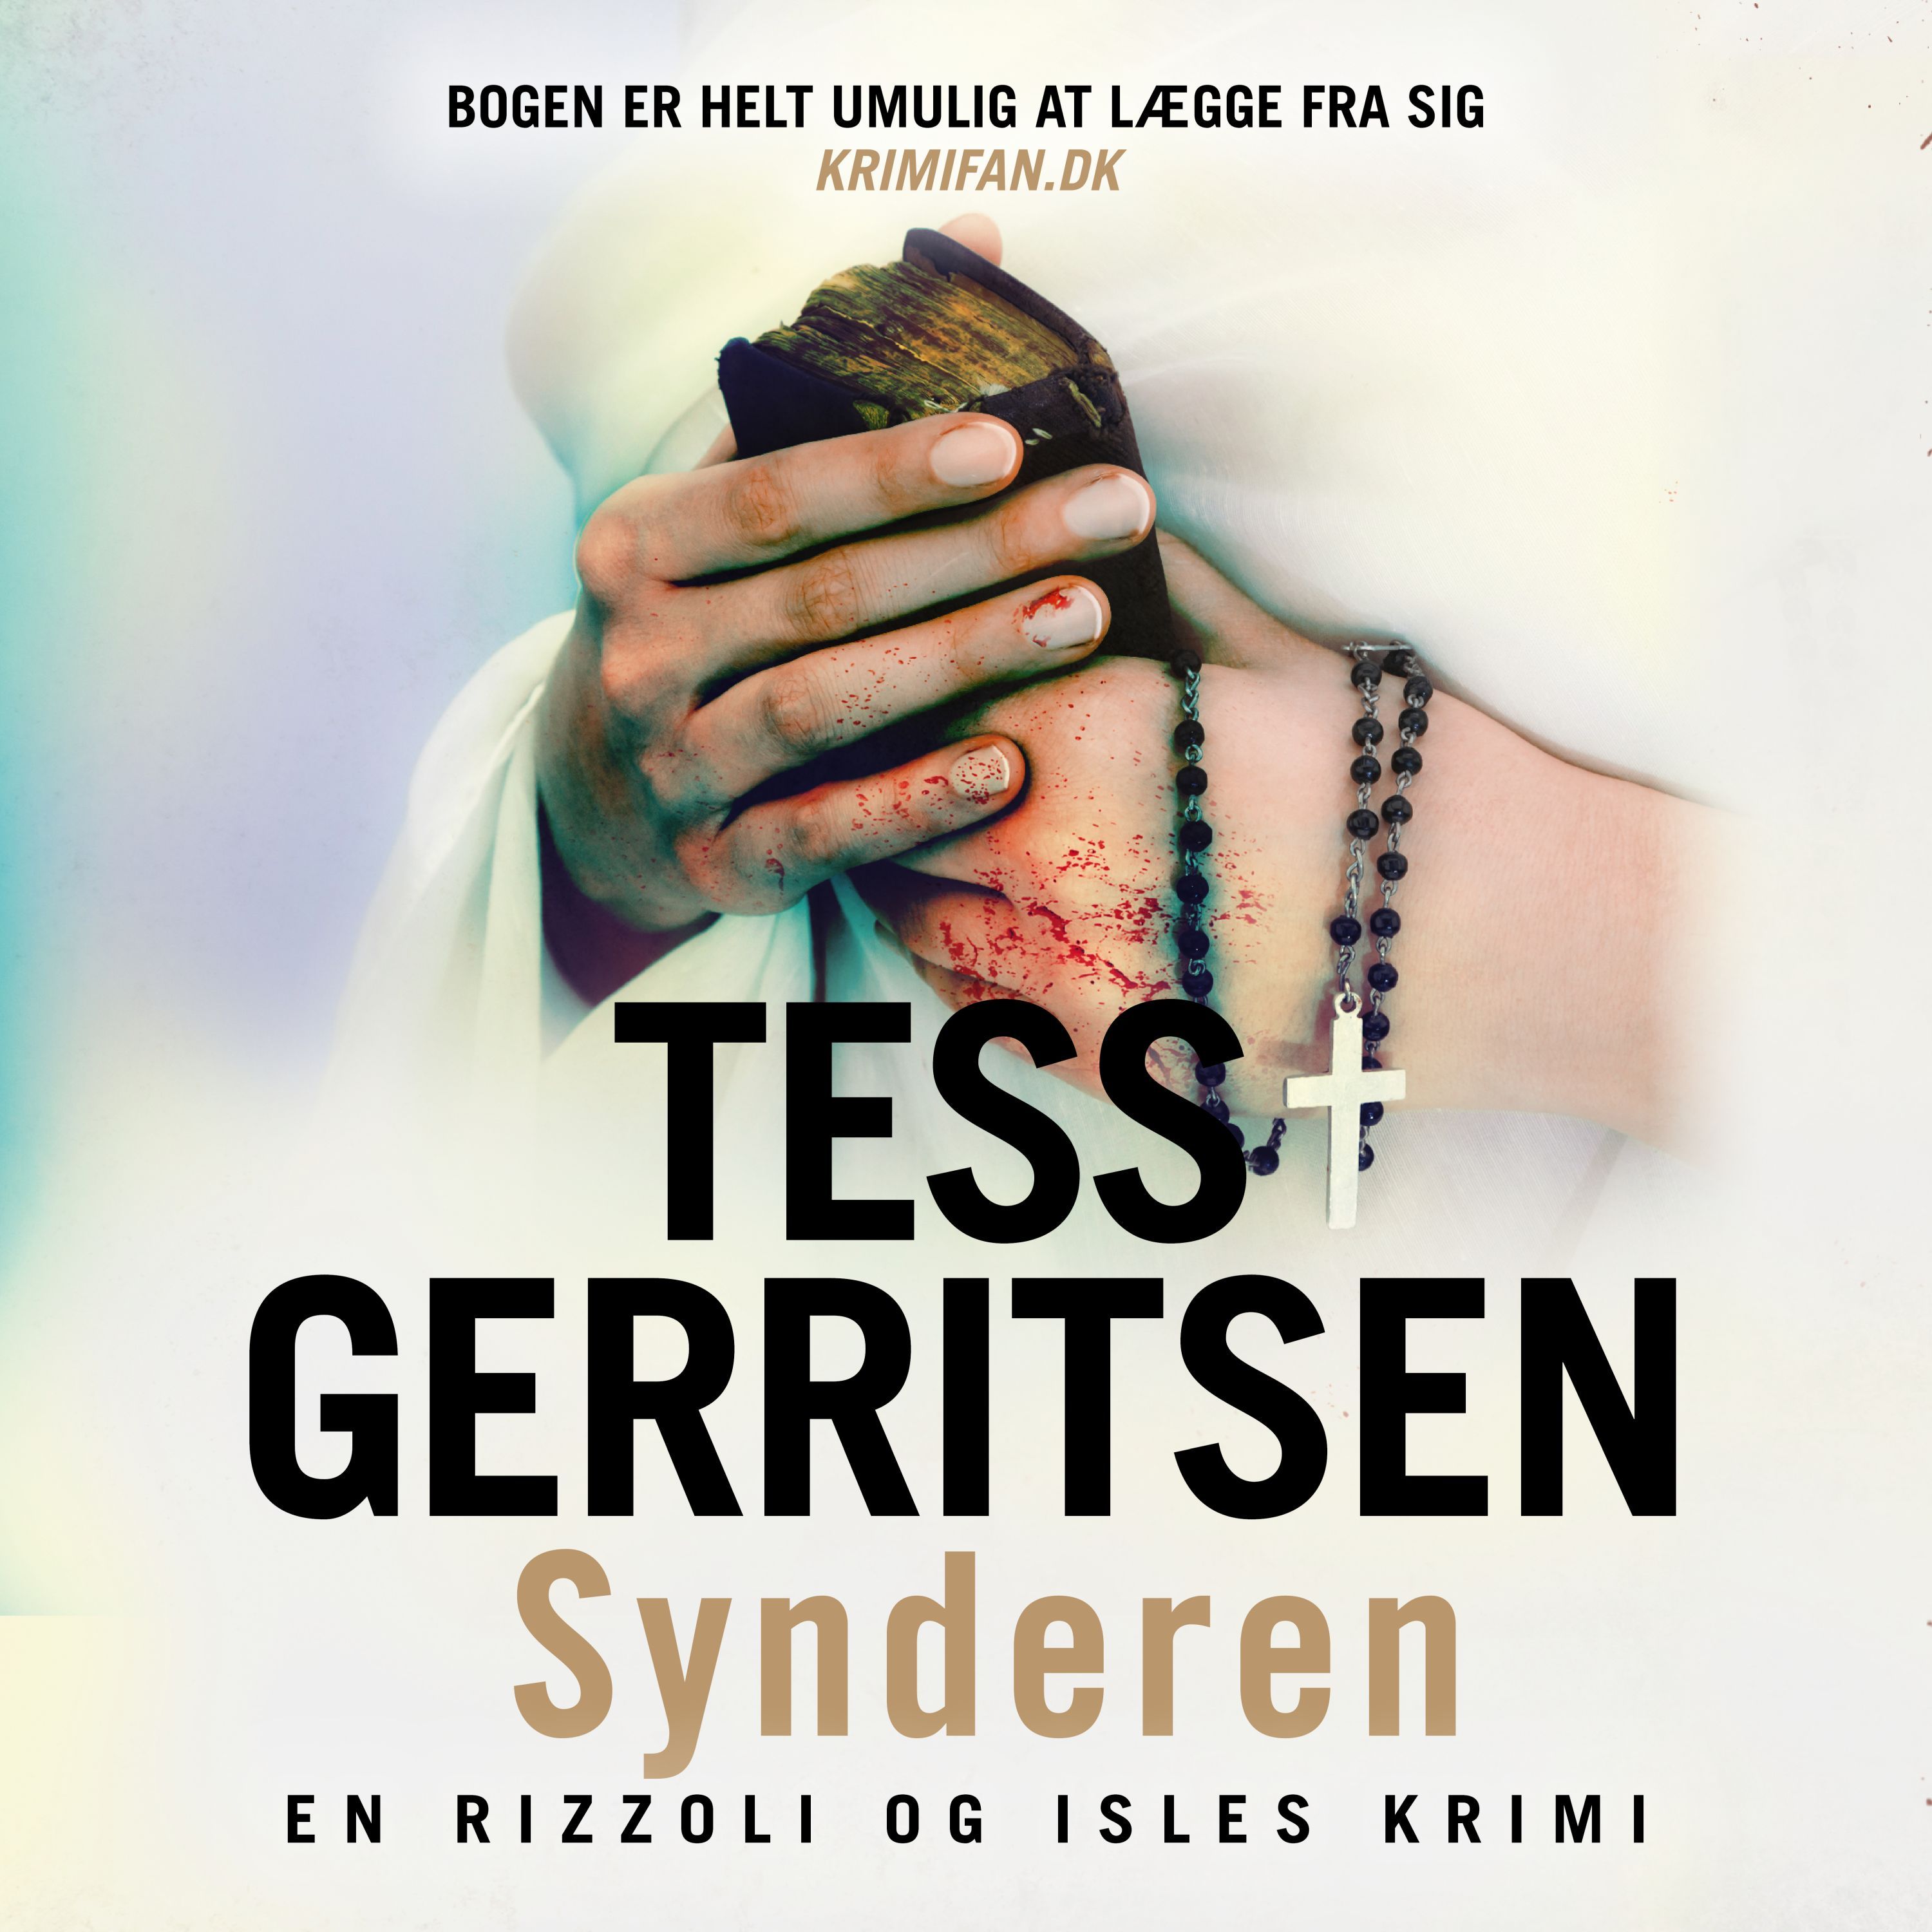 Synderen, lydbog af Tess Gerritsen